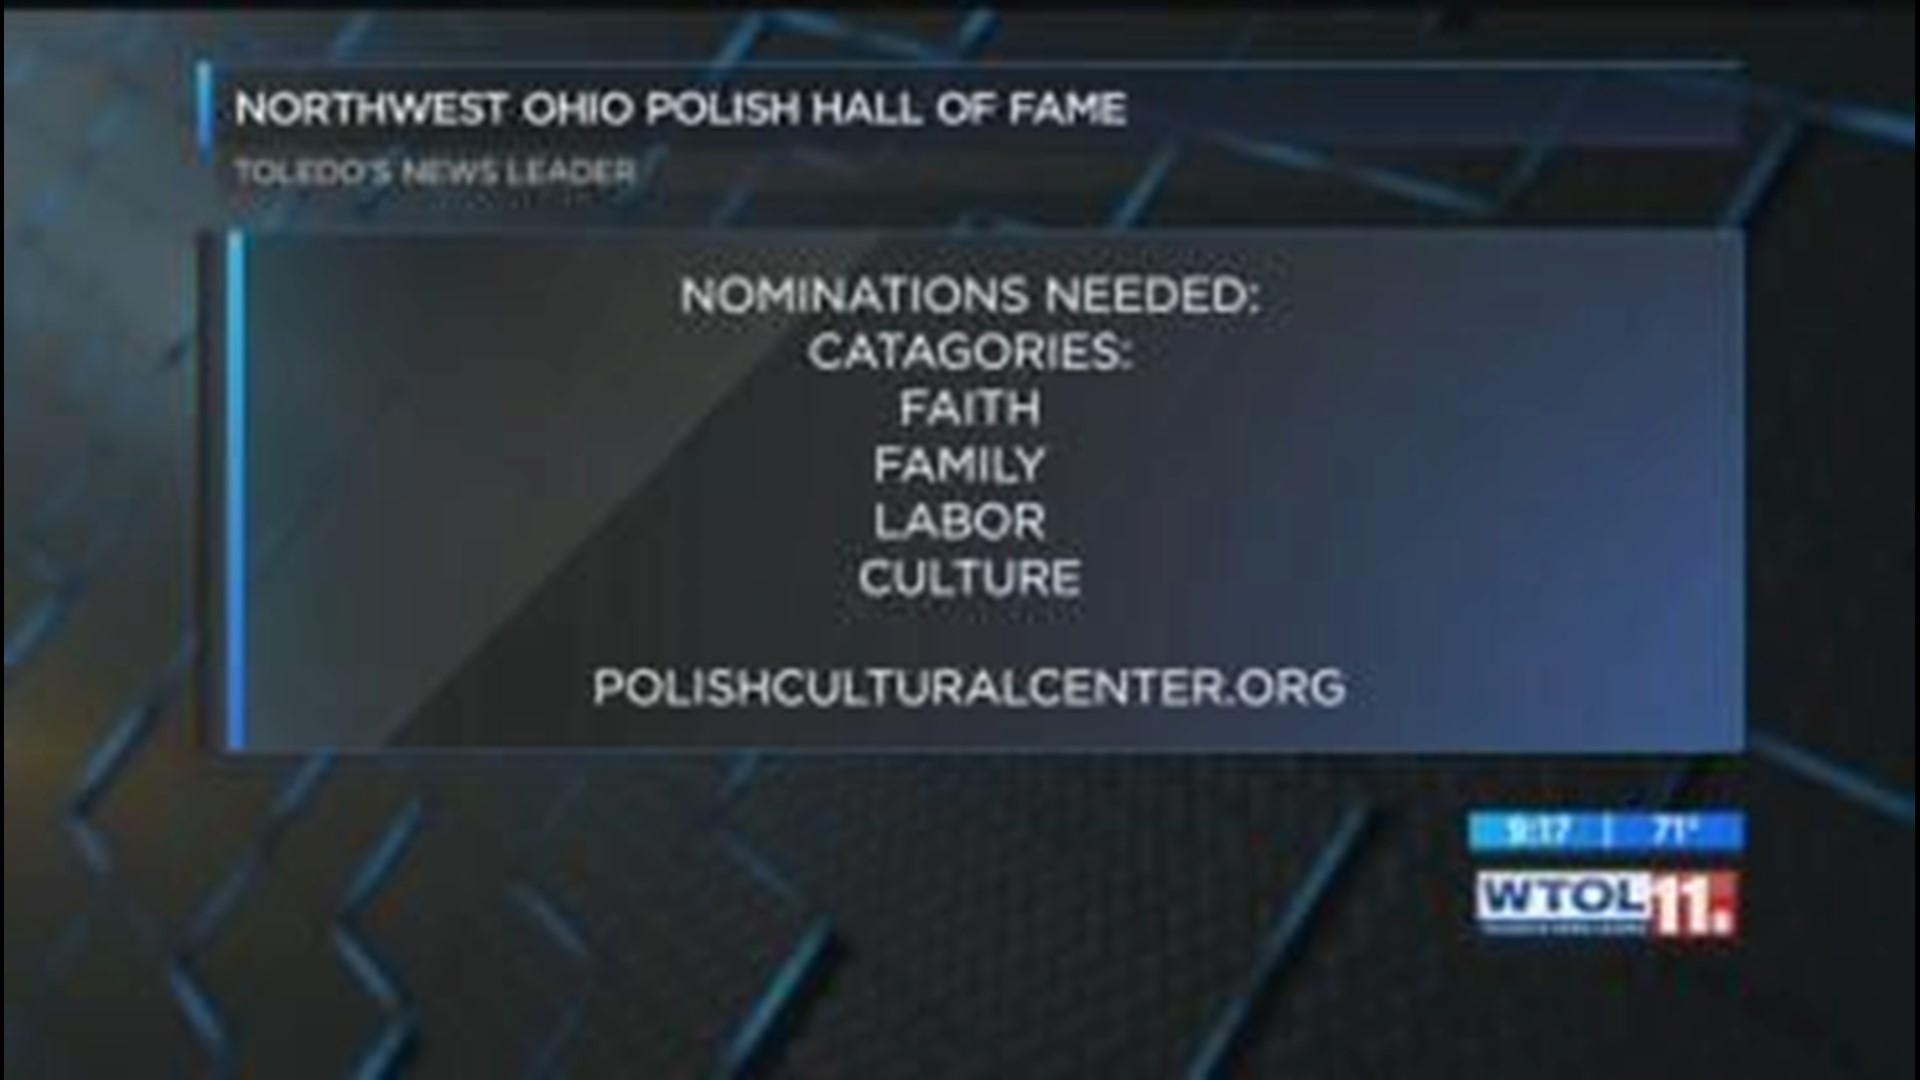 Northwest Ohio Polish Hall of Fame